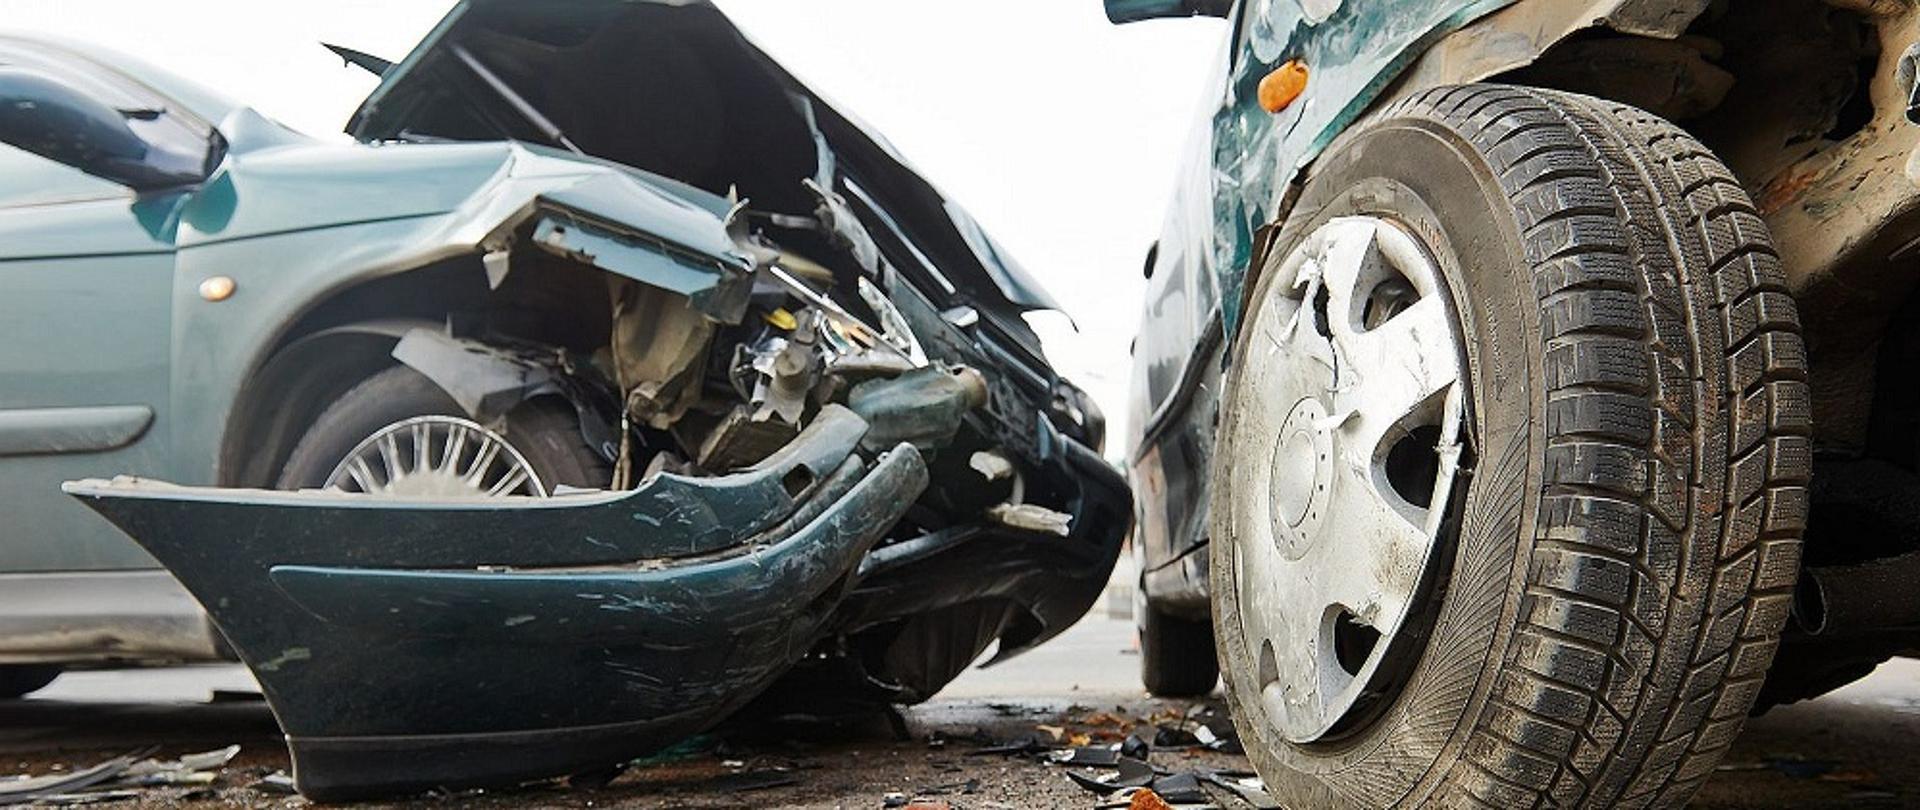 Zdjęcie przedstawia na jasnym tle dwa uszkodzone samochody osobowe po wypadku drogowym